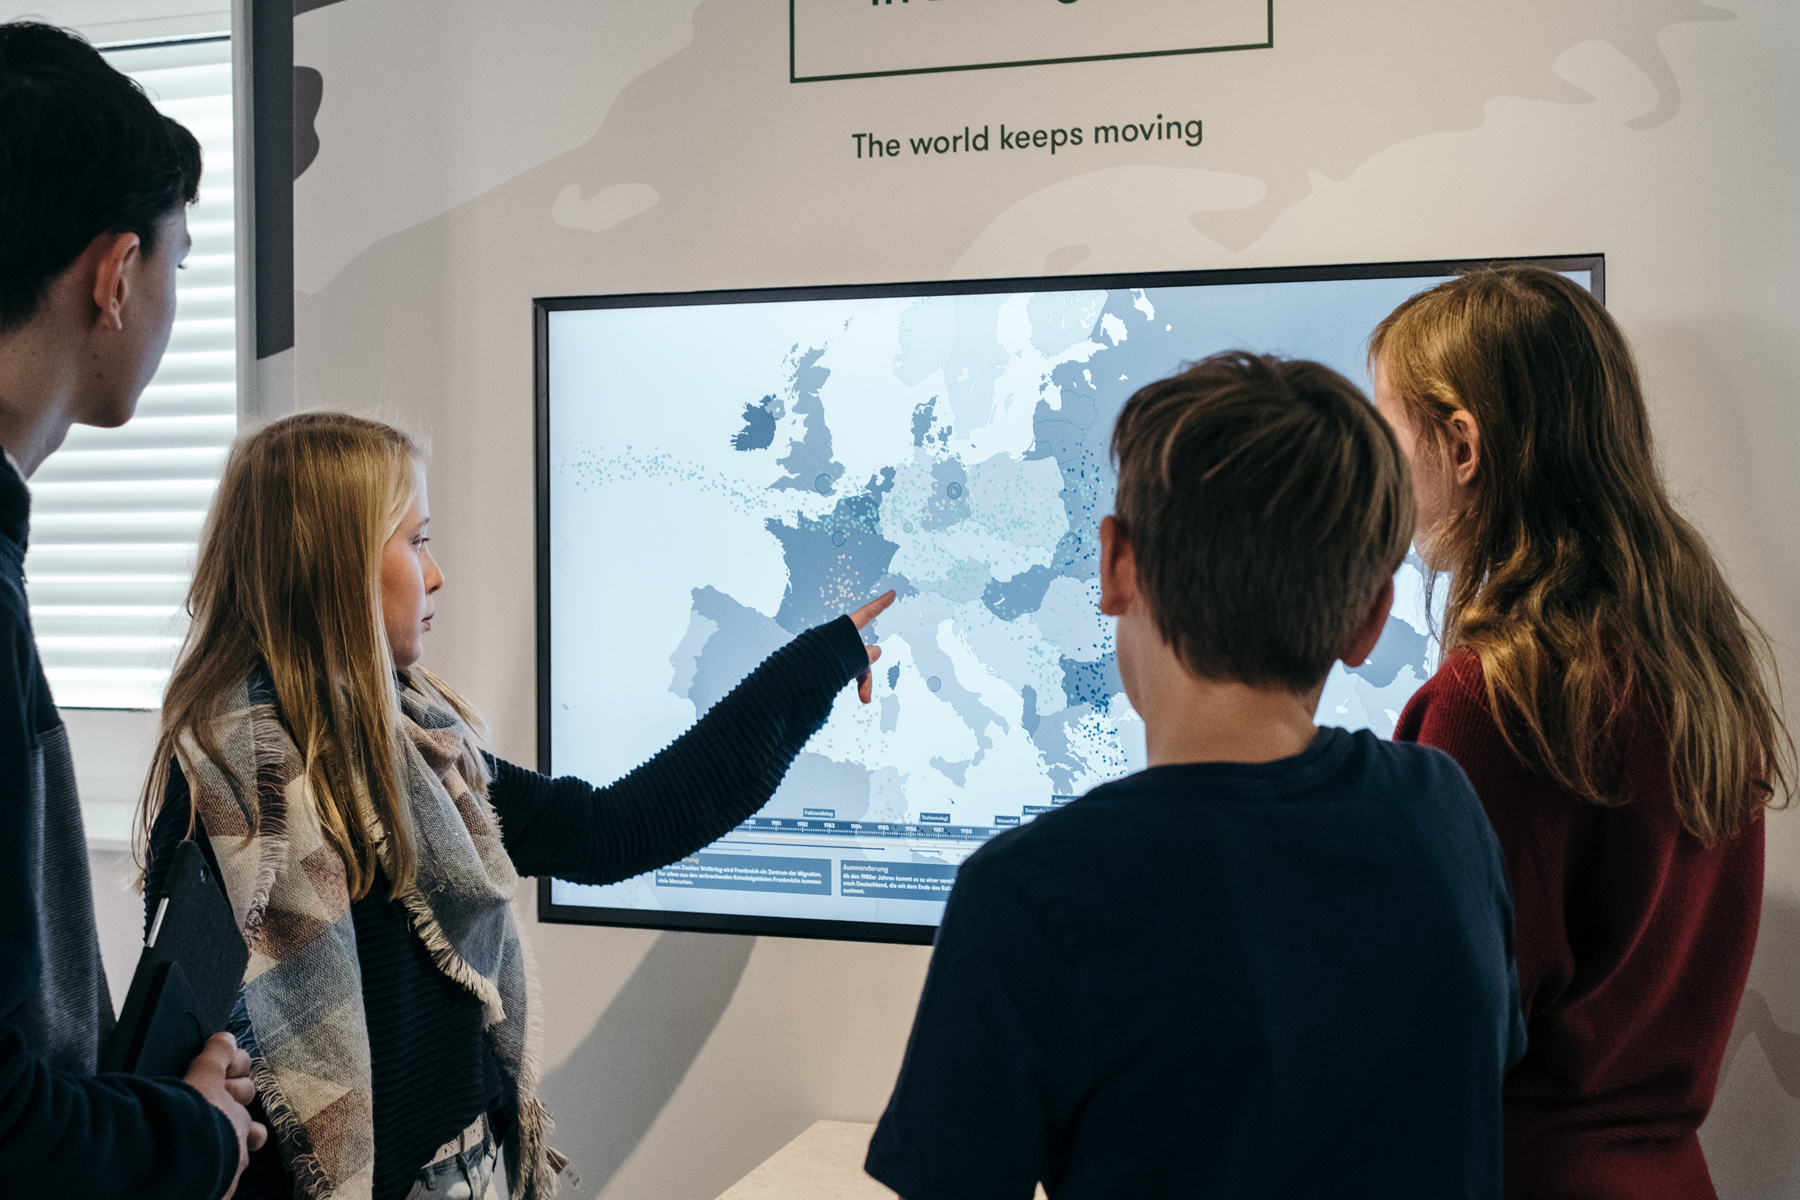 4 Jugendliche Stehen vor einem Bildschirm mit einer Weltkarte, über dem Bildschirm stehen die Worte: "The world keeps moving".